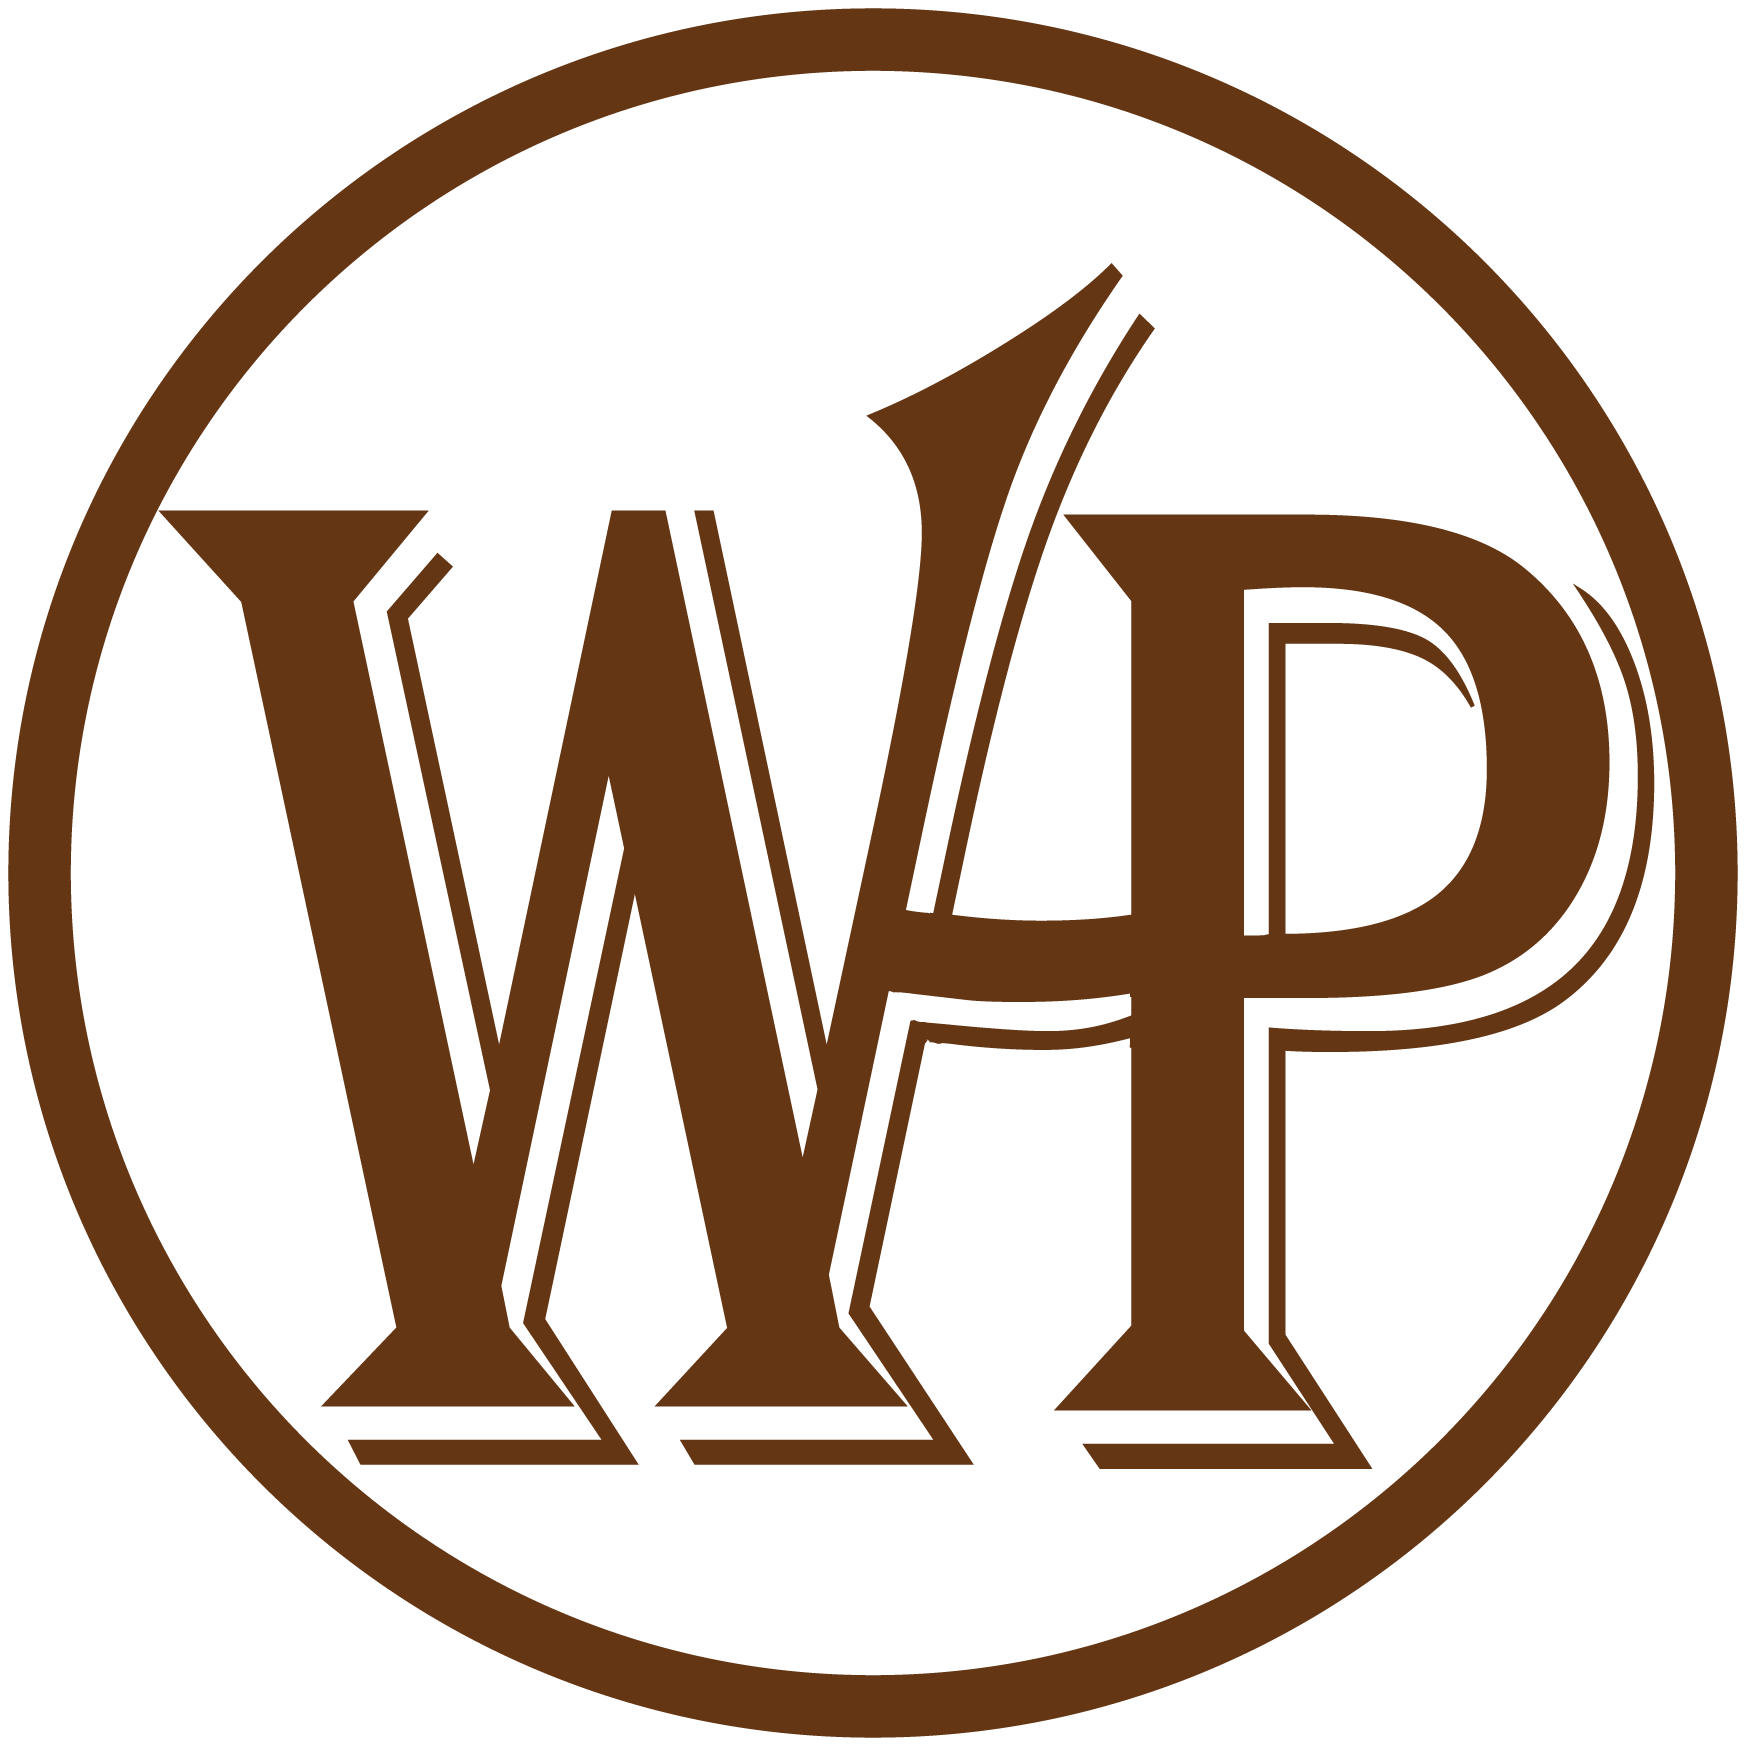 WHP Logo